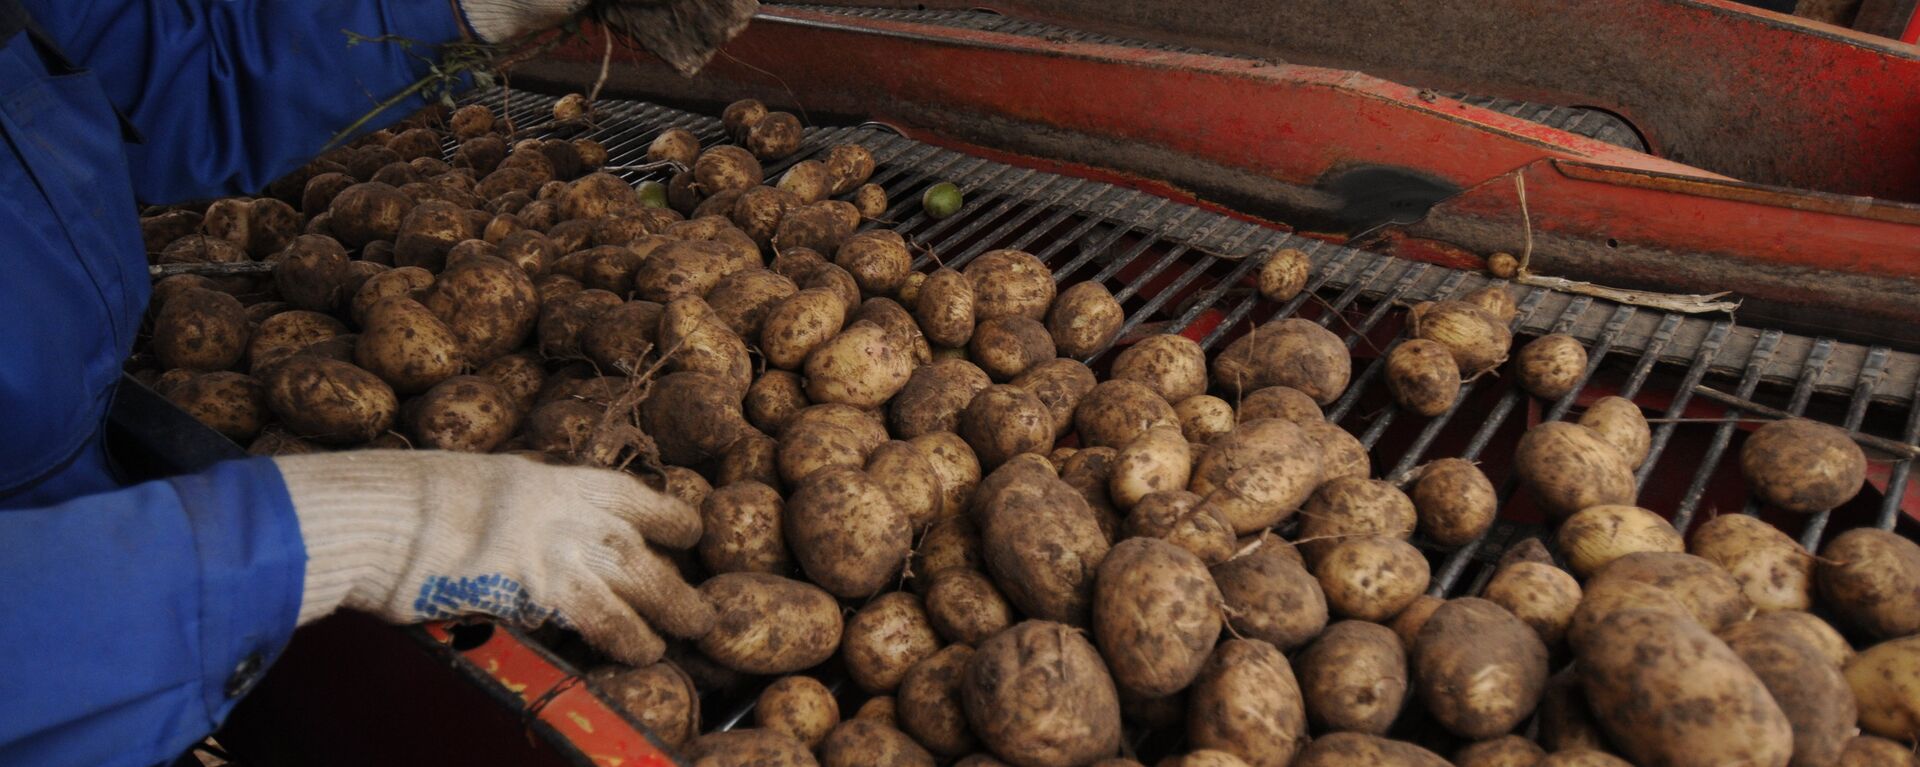 Сбор урожая картофеля - Sputnik Латвия, 1920, 22.04.2020